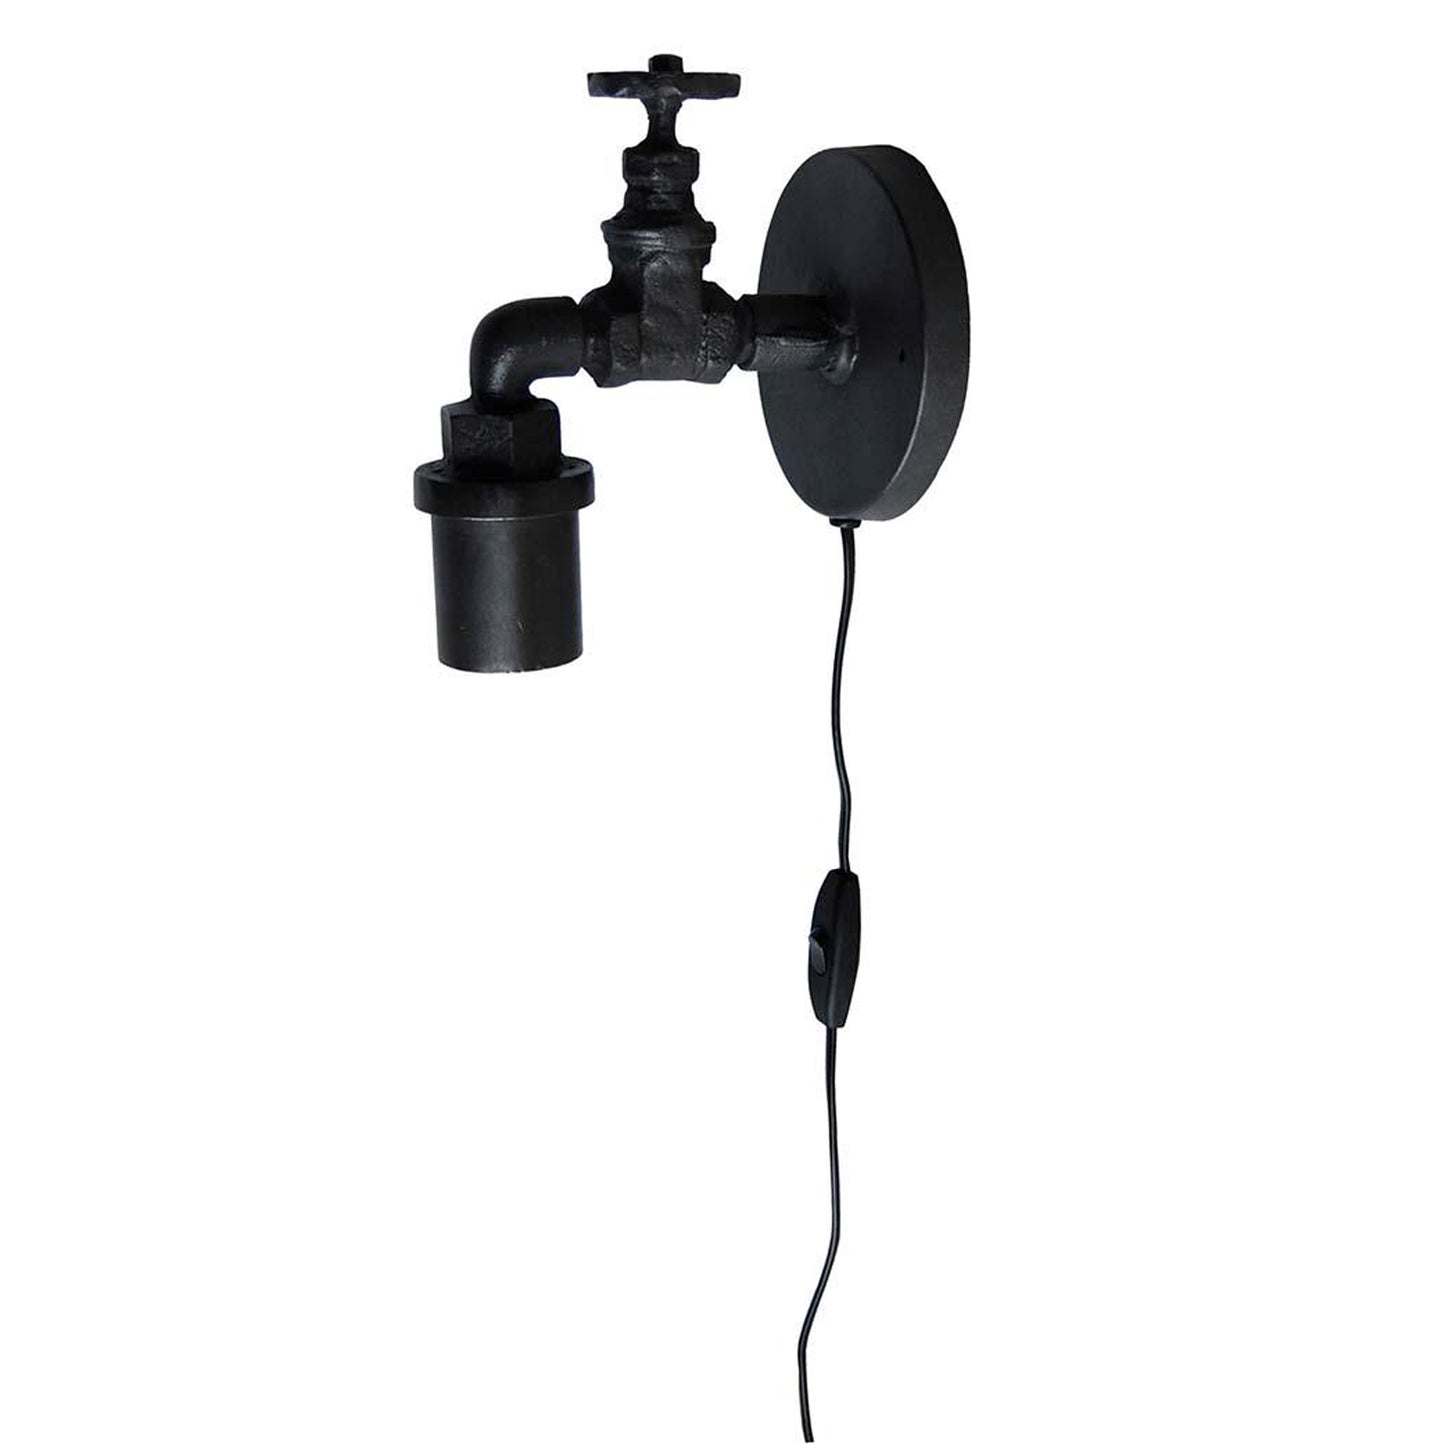 Design Wandlampe Wasserhahn "Albani" aus Eisen E27 22x14 cm mit Kabel und Schalter